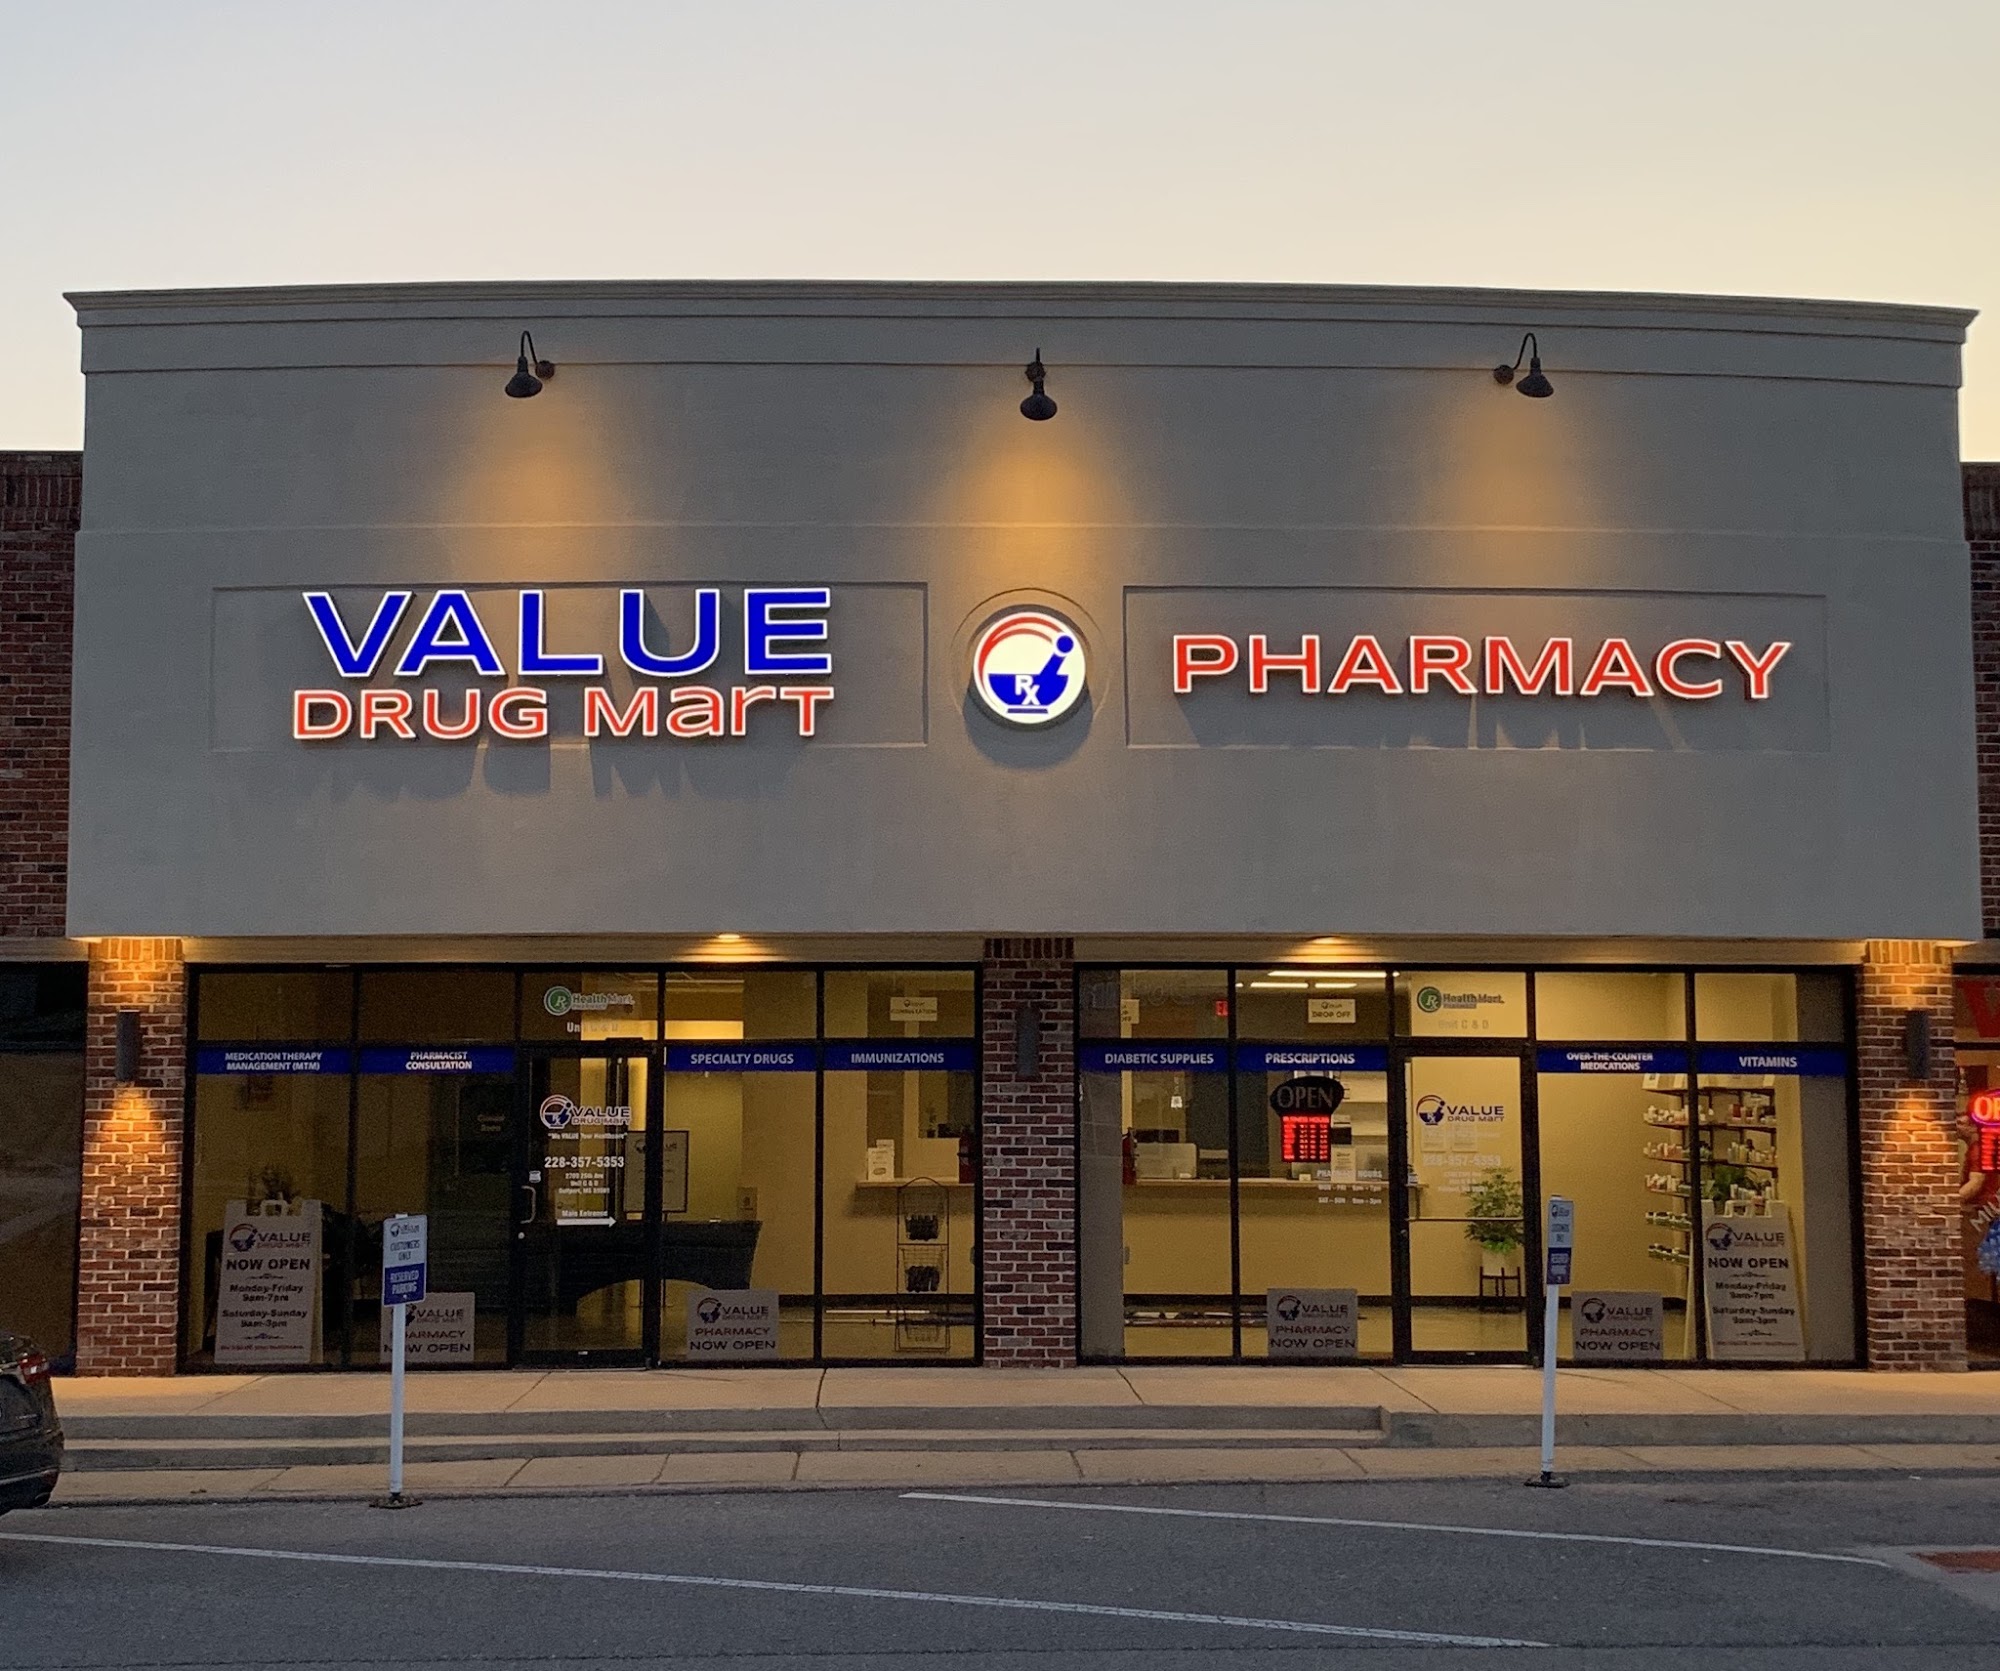 Value Drug Mart